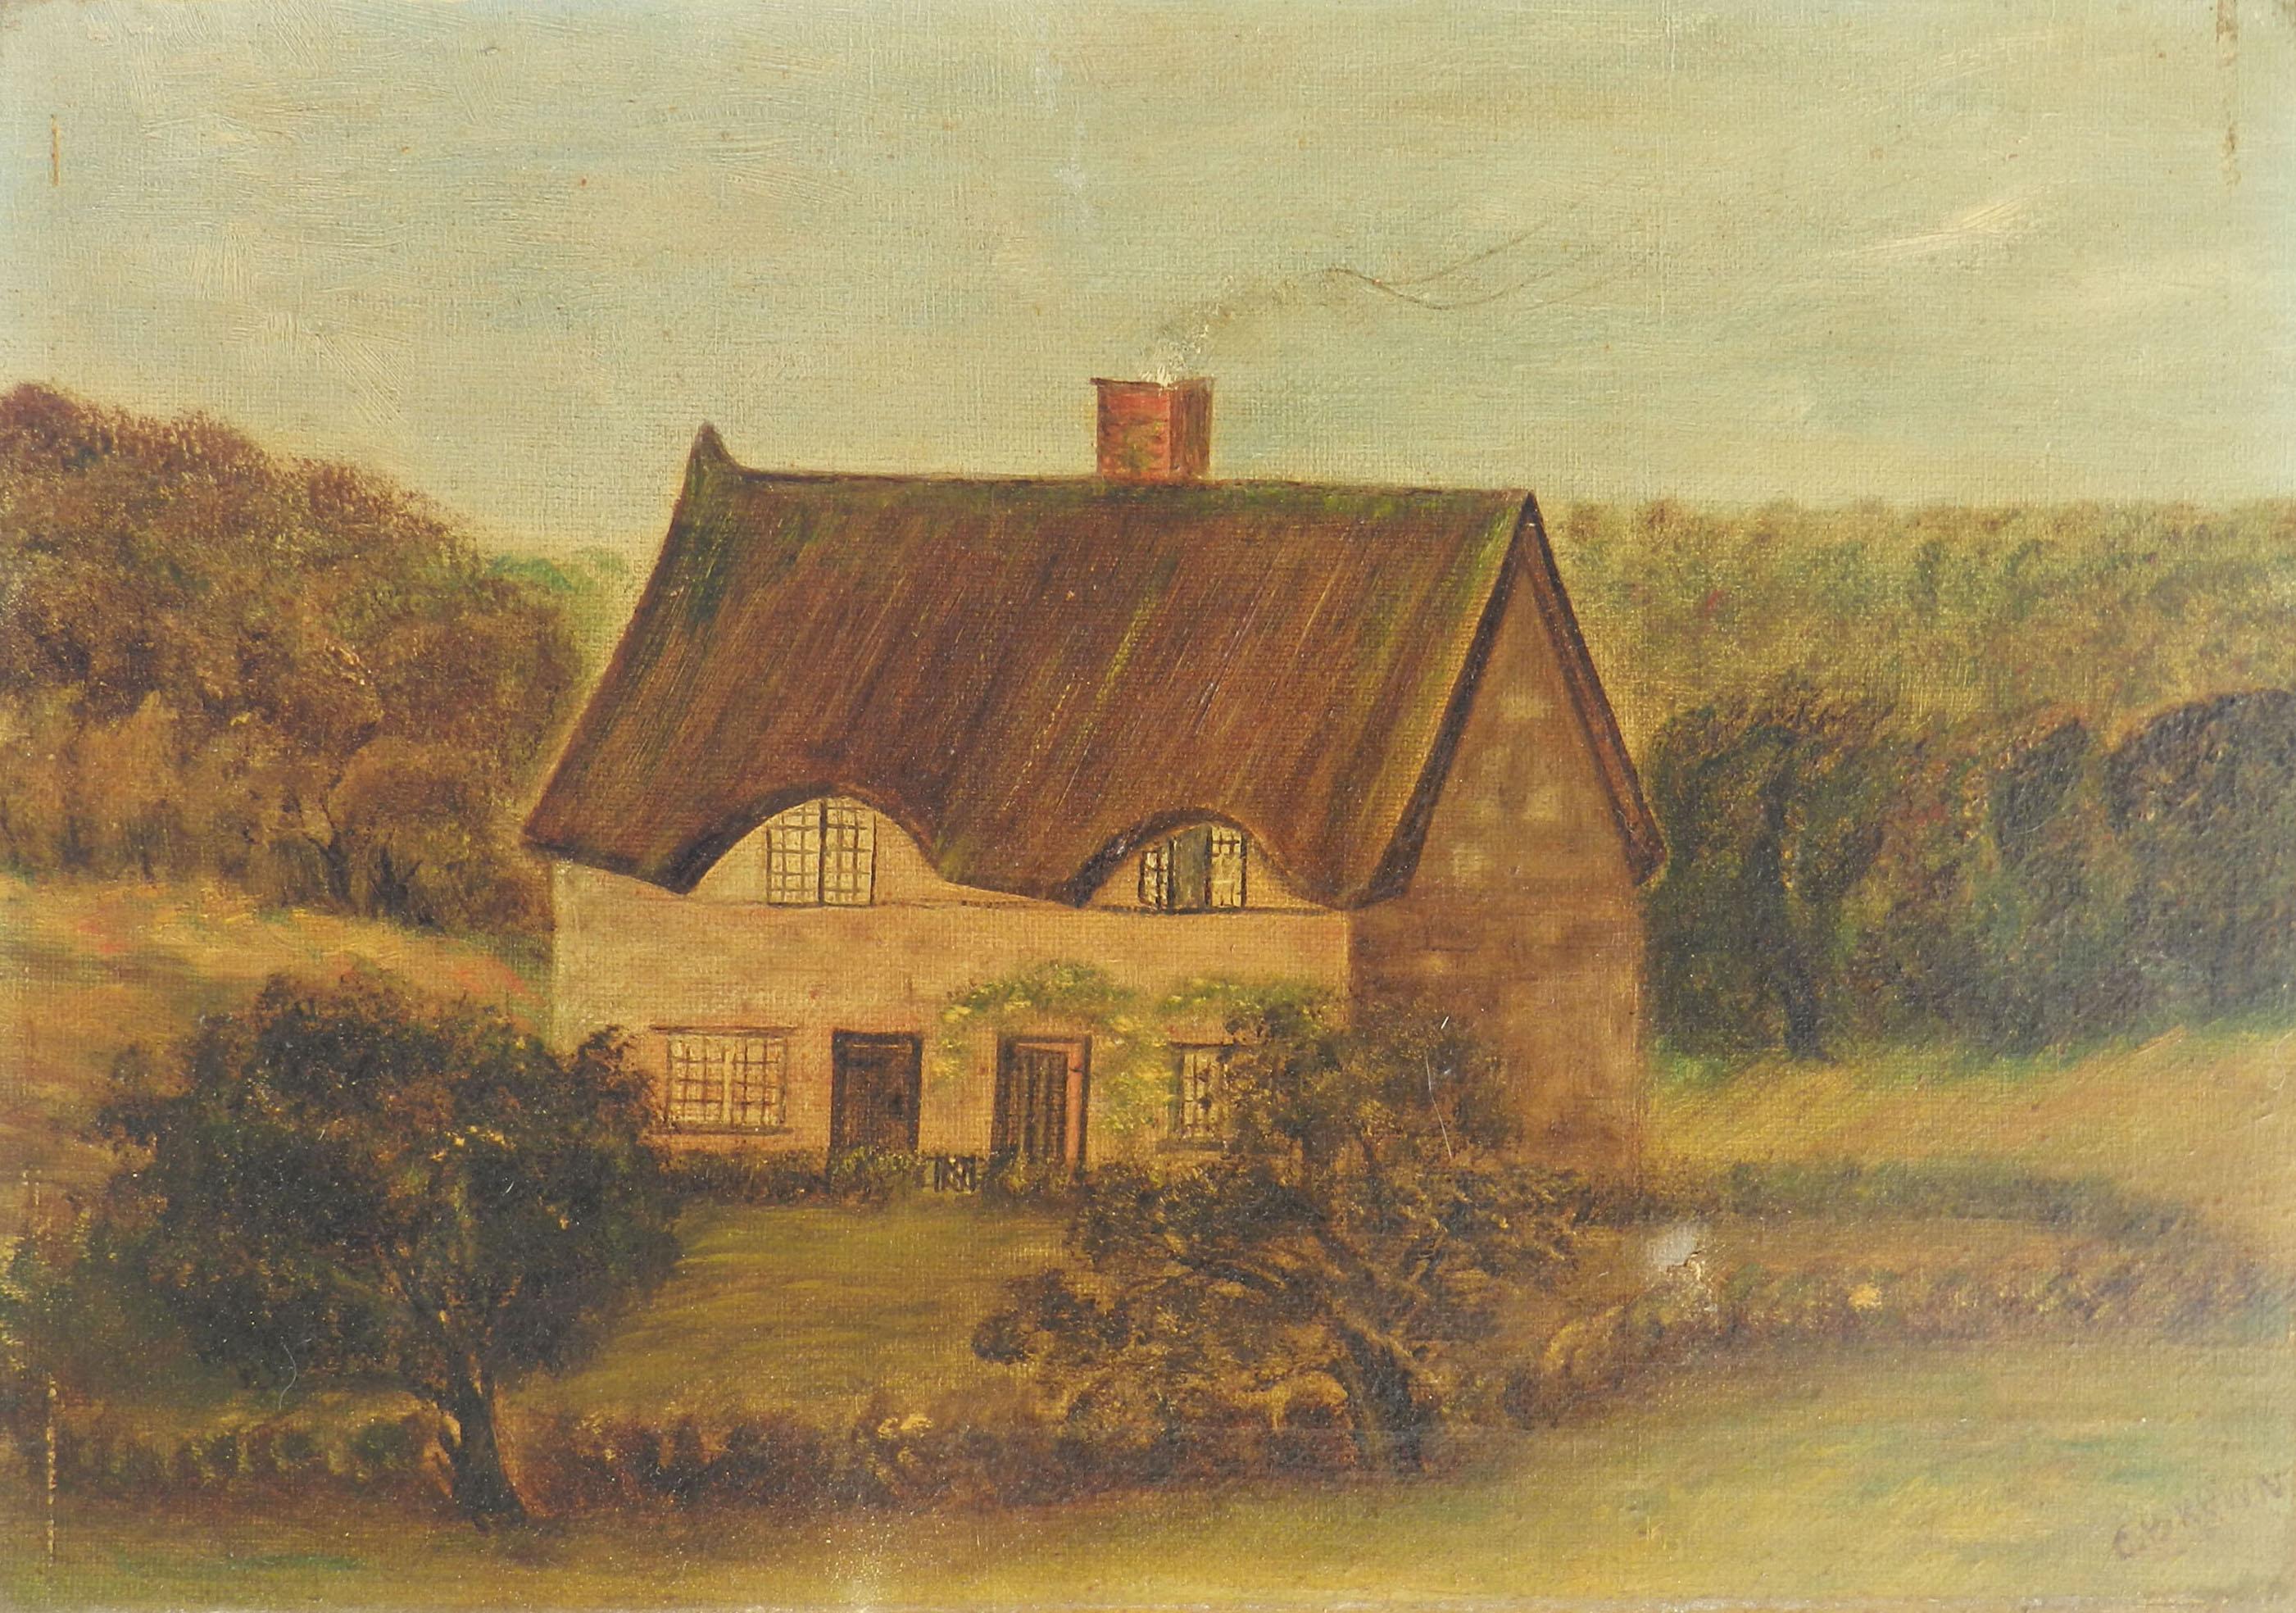 Landscape Painting Unknown - Peinture de maison naïve du 19ème siècle anglaise signée C Brown 